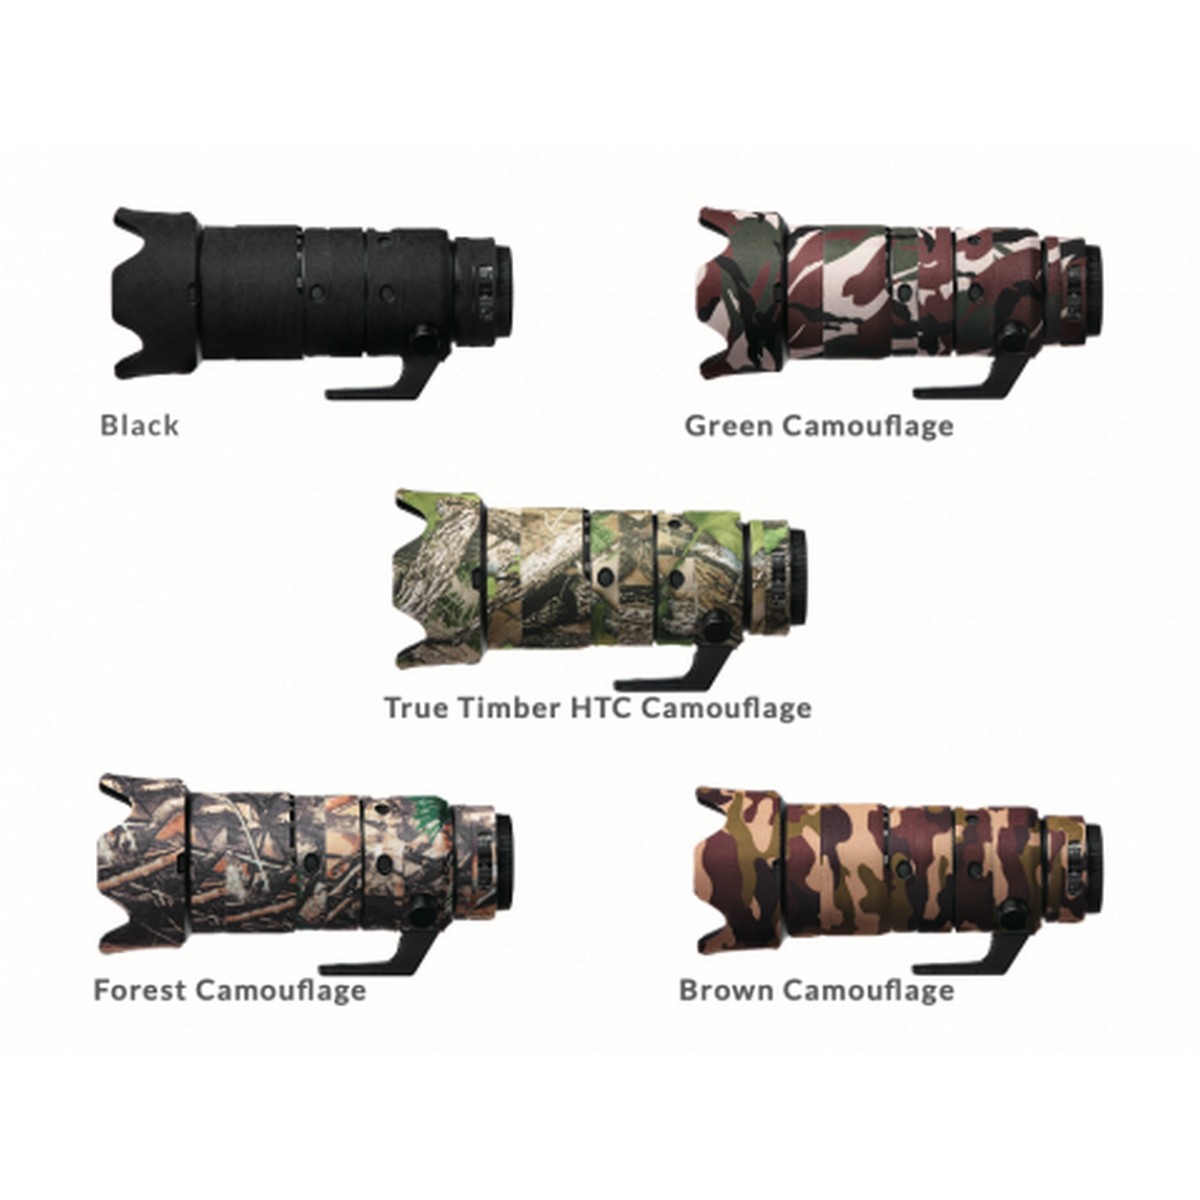 Easycover Lens Oak Objektivschutz für Nikkor Z 70-200 mm 1:2,8 VR S Grün Camouflage